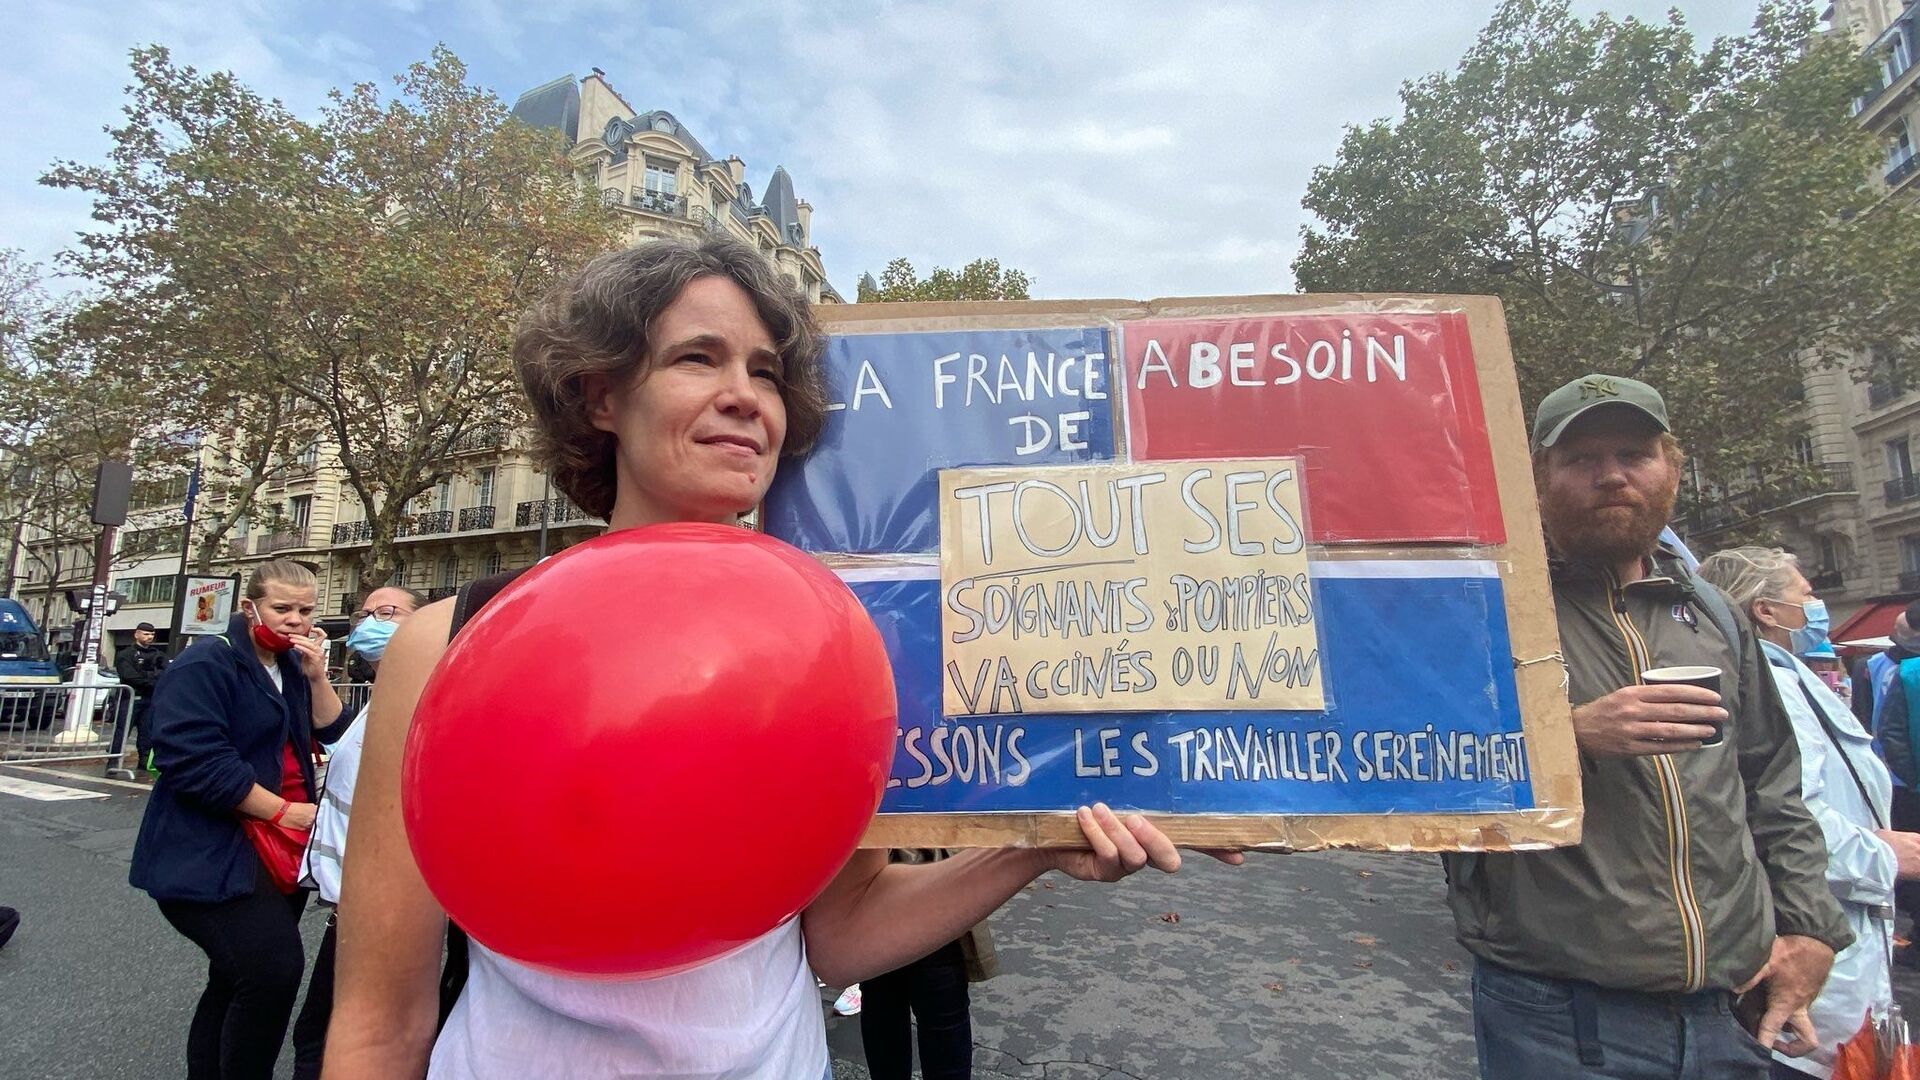 Manifestation de soignants contre obligation vaccinale à Paris, le 14 septembre - Sputnik Afrique, 1920, 14.09.2021